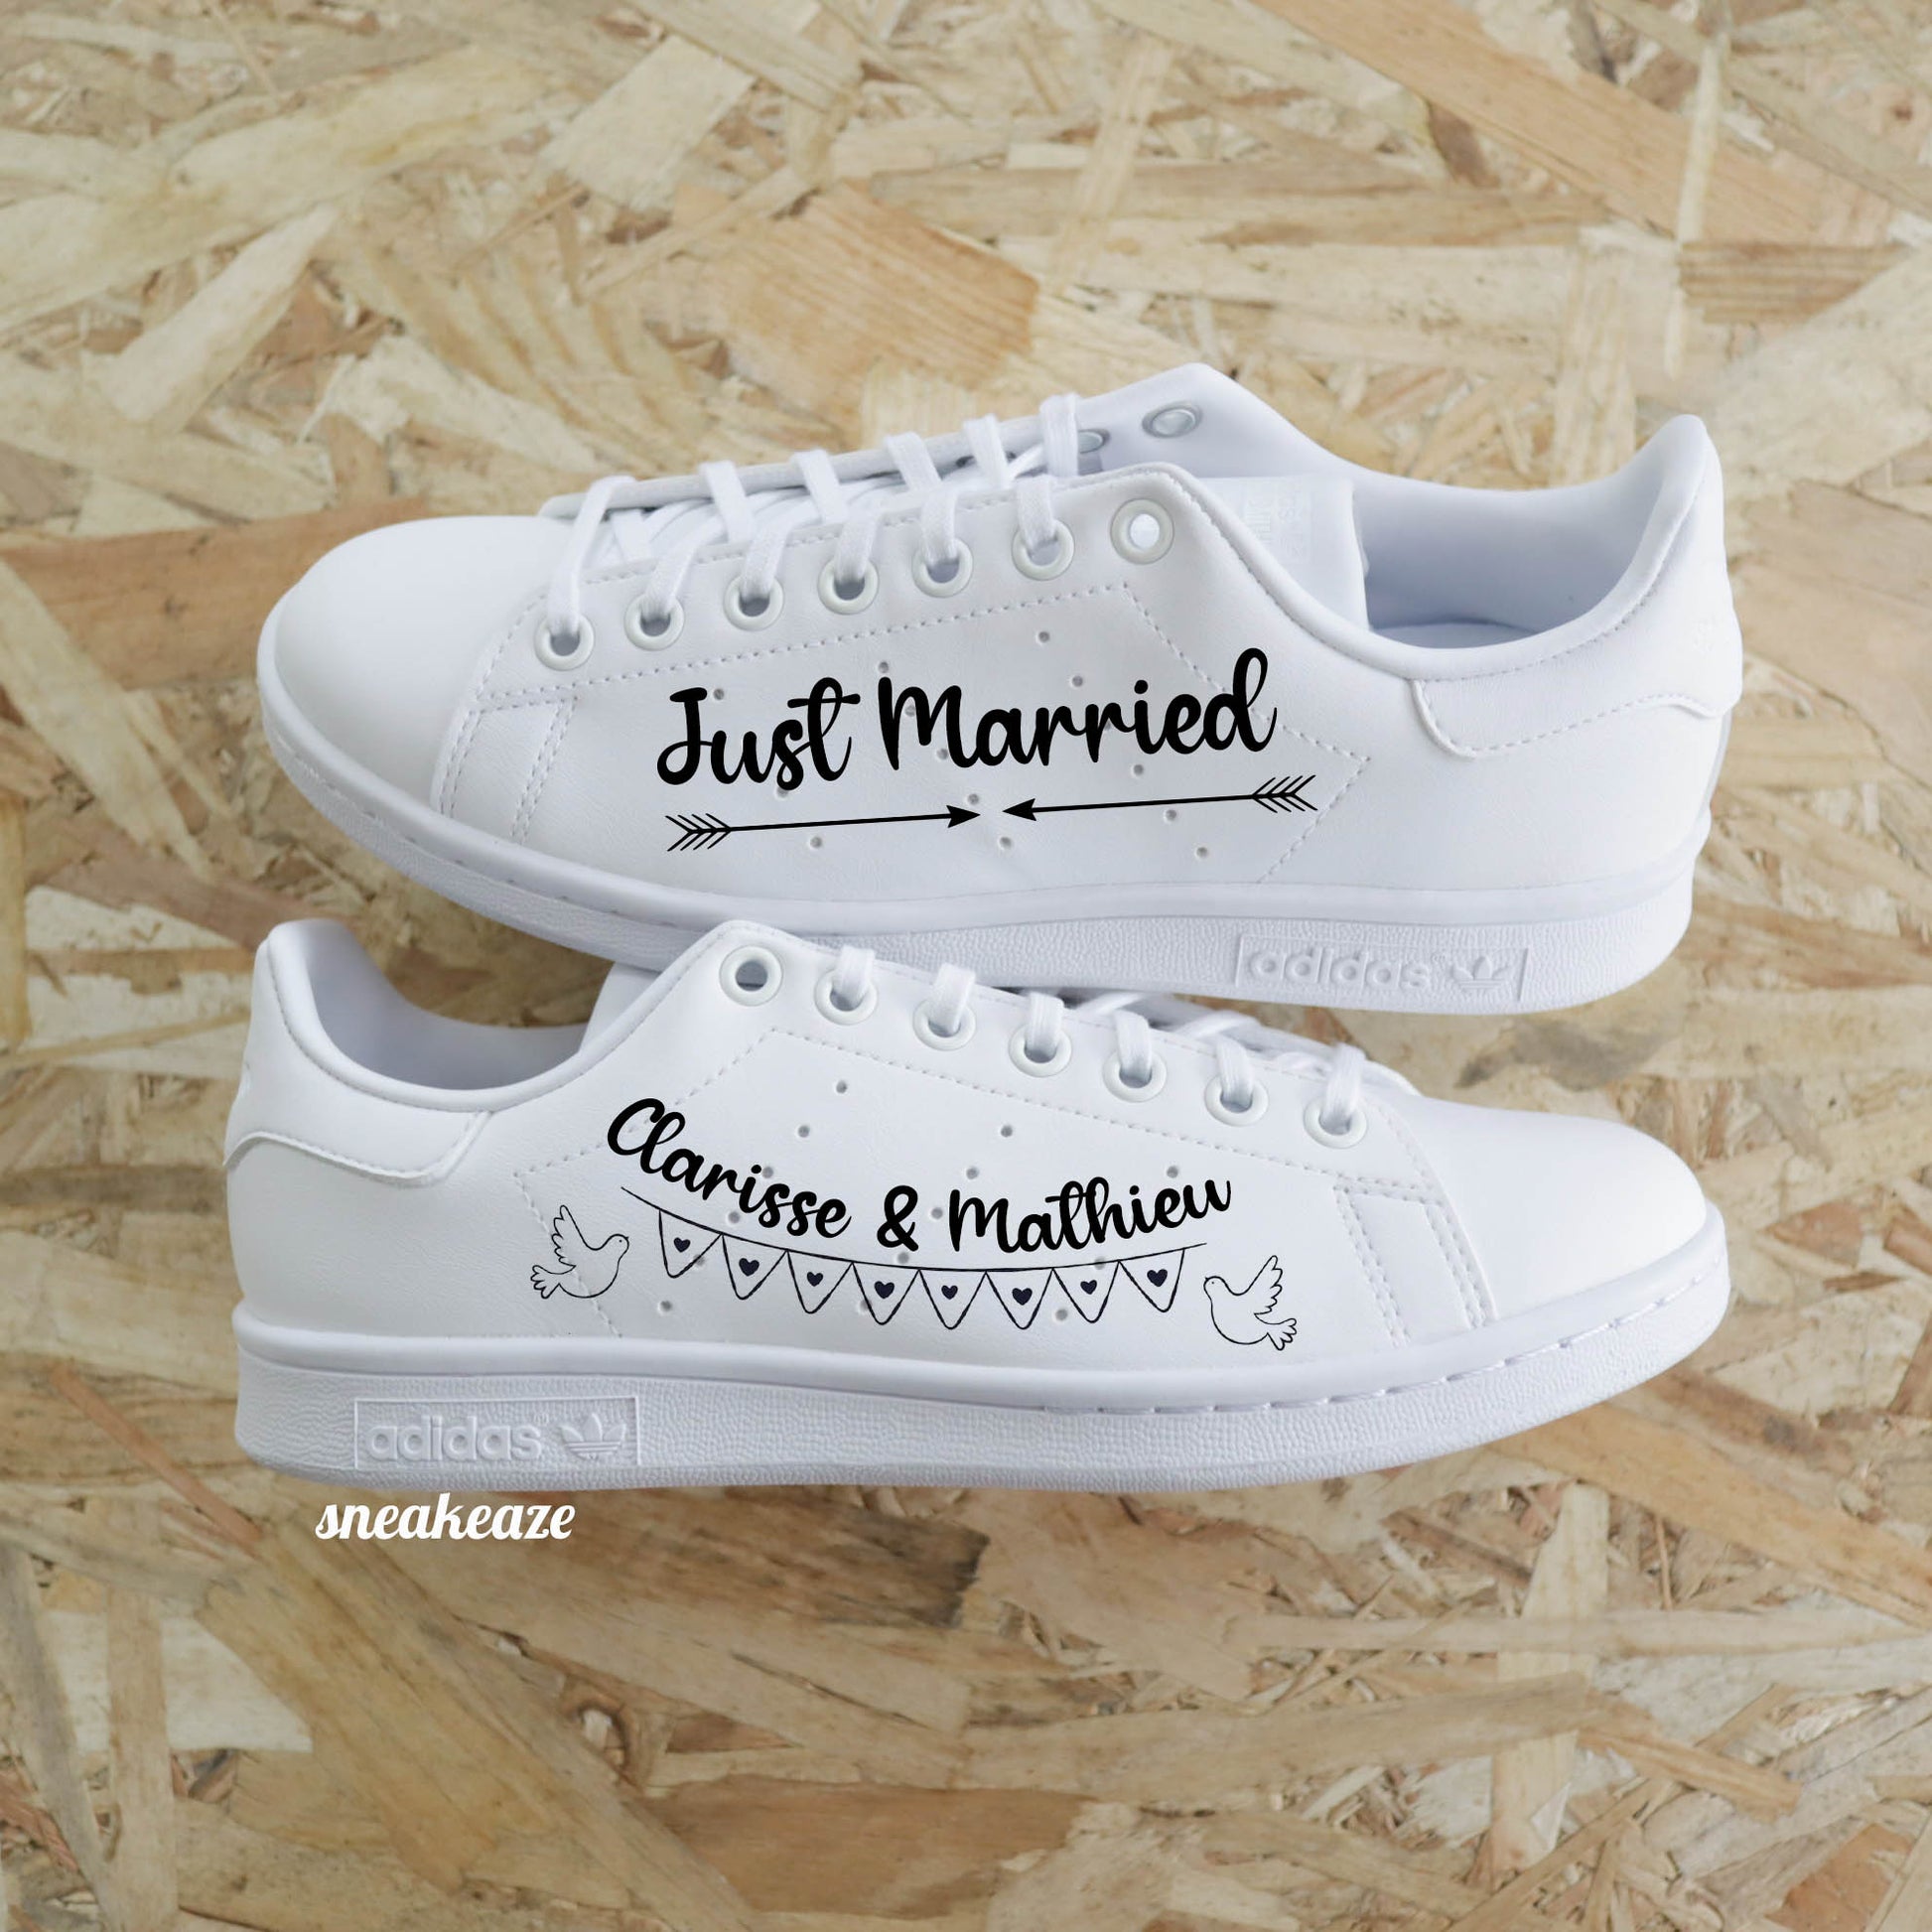 baskets adidas stan smith mariage - personnalisation des prénoms des mariés just married - sneakeaze customs skz